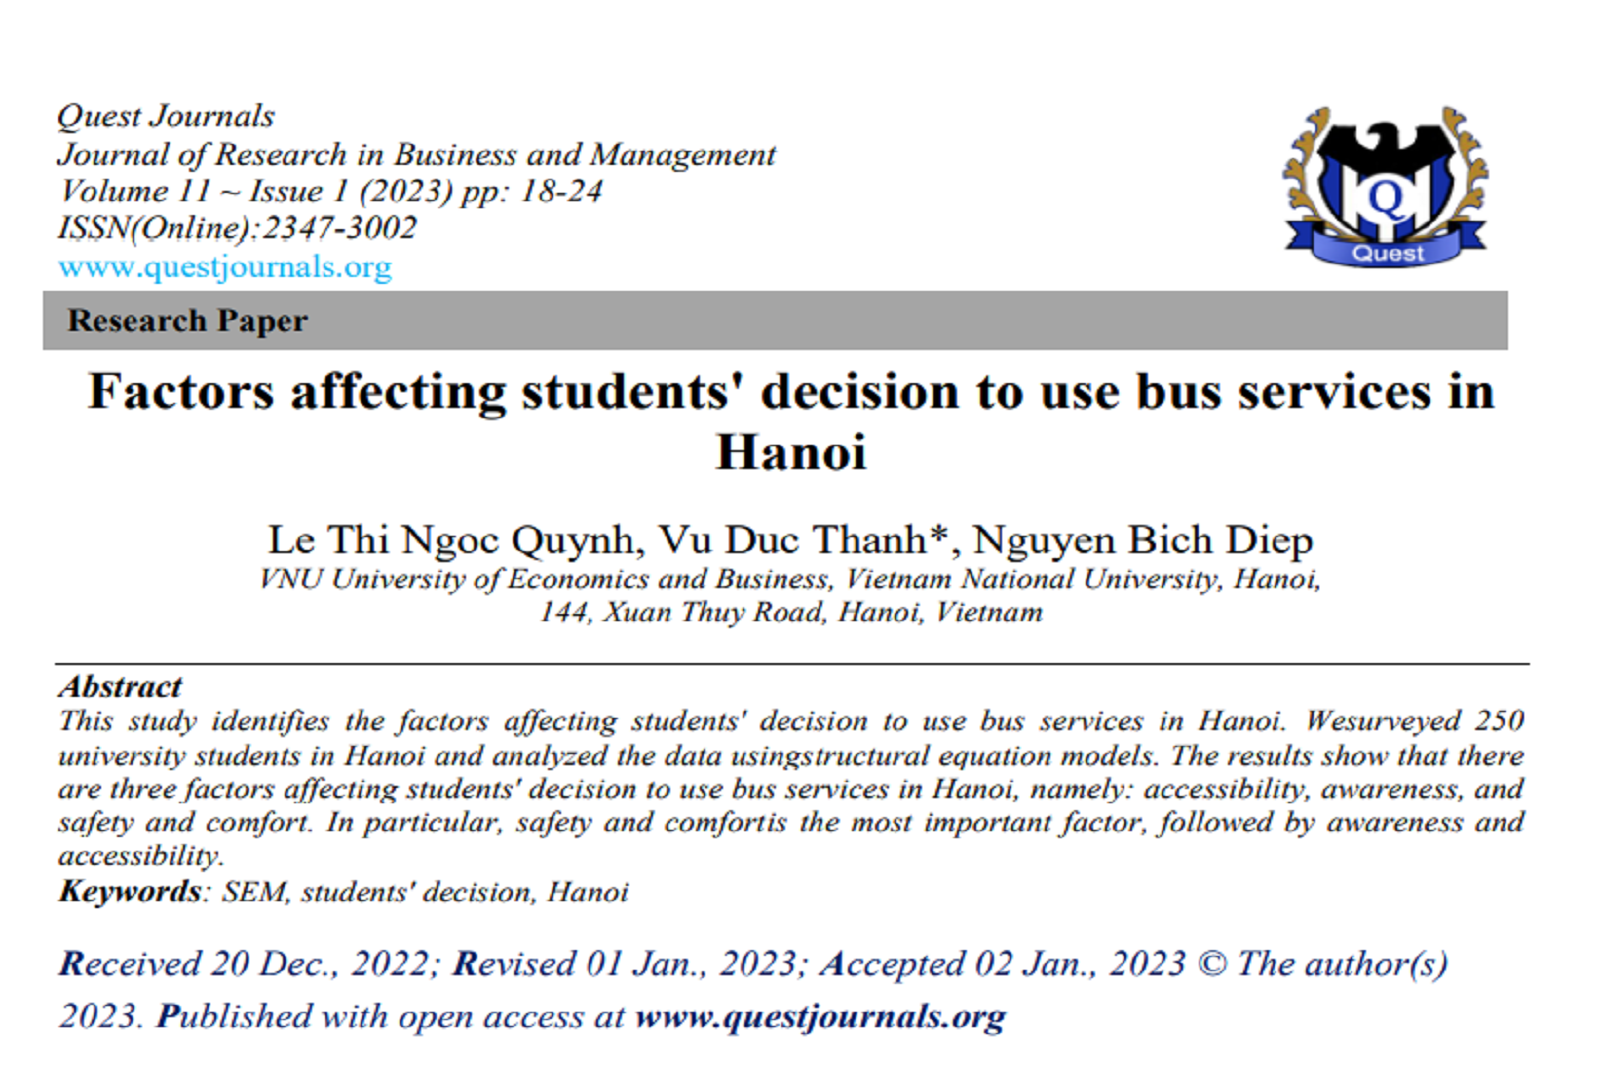 Các yếu tố ảnh hưởng đến quyết định sử dụng dịch vụ xe buýt của sinh viên tại Hà Nội